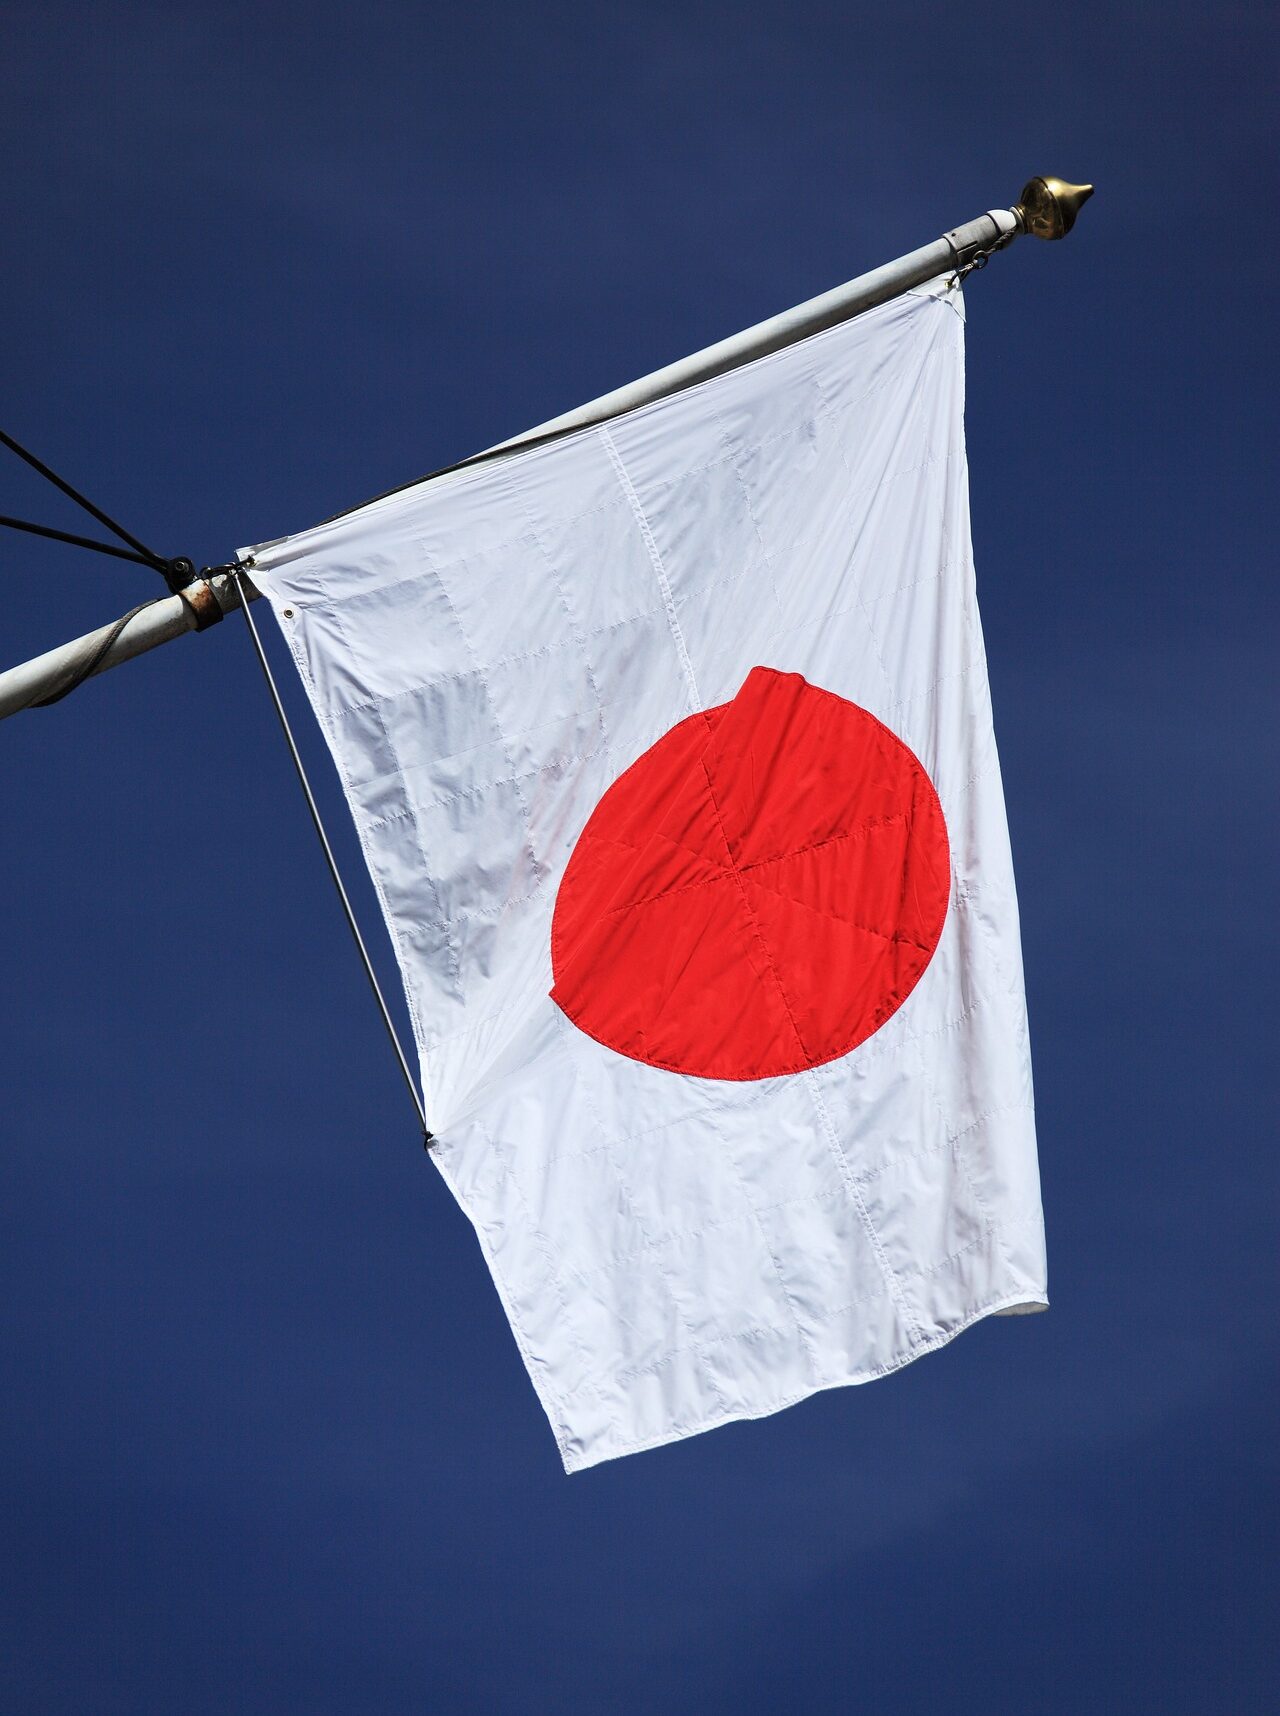 Japon: le gouvernement va demander la dissolution de l'Eglise de l'Unification